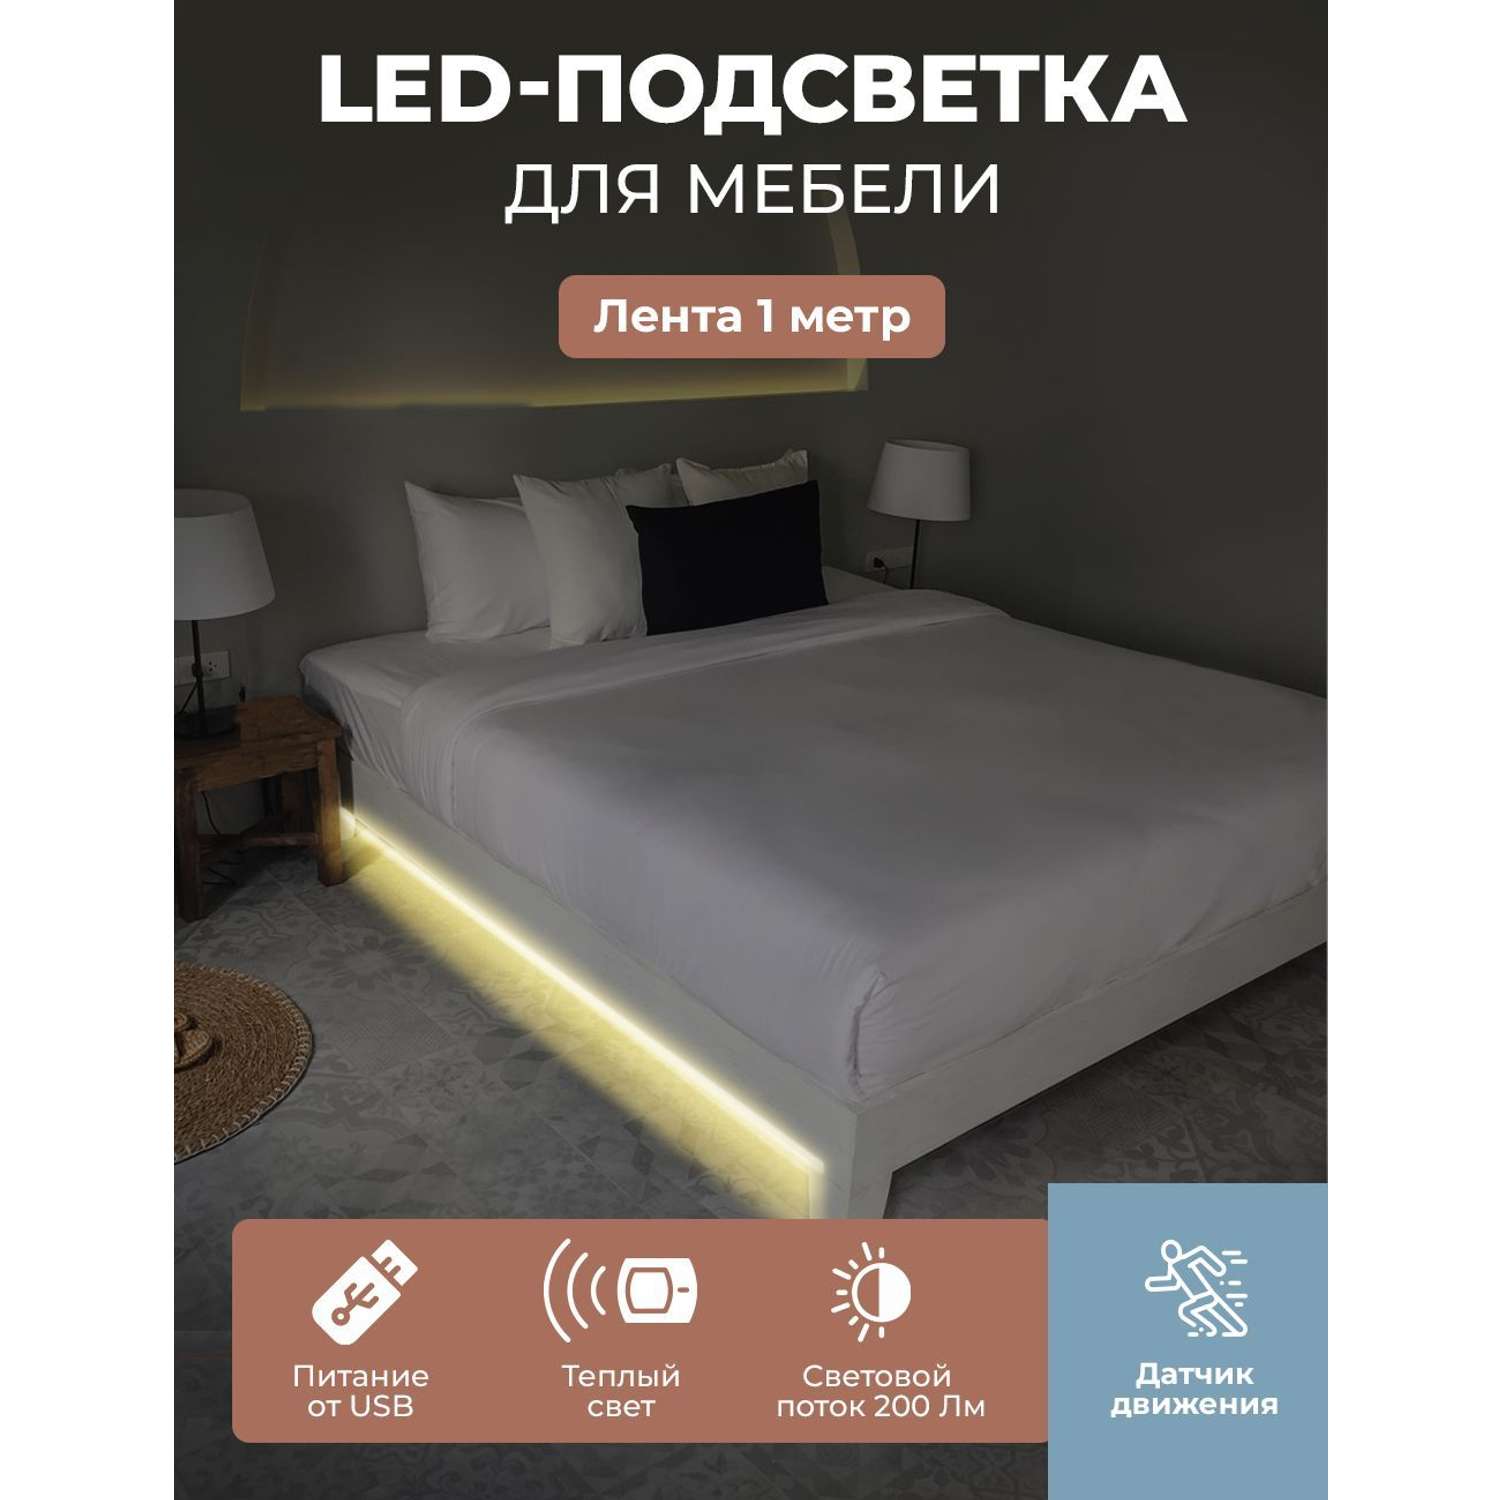 LED подсветка для кровати ГЕЛЕОС светодиодная лента 1 м теплый свет USB 5V для спальни или гостиной - фото 2